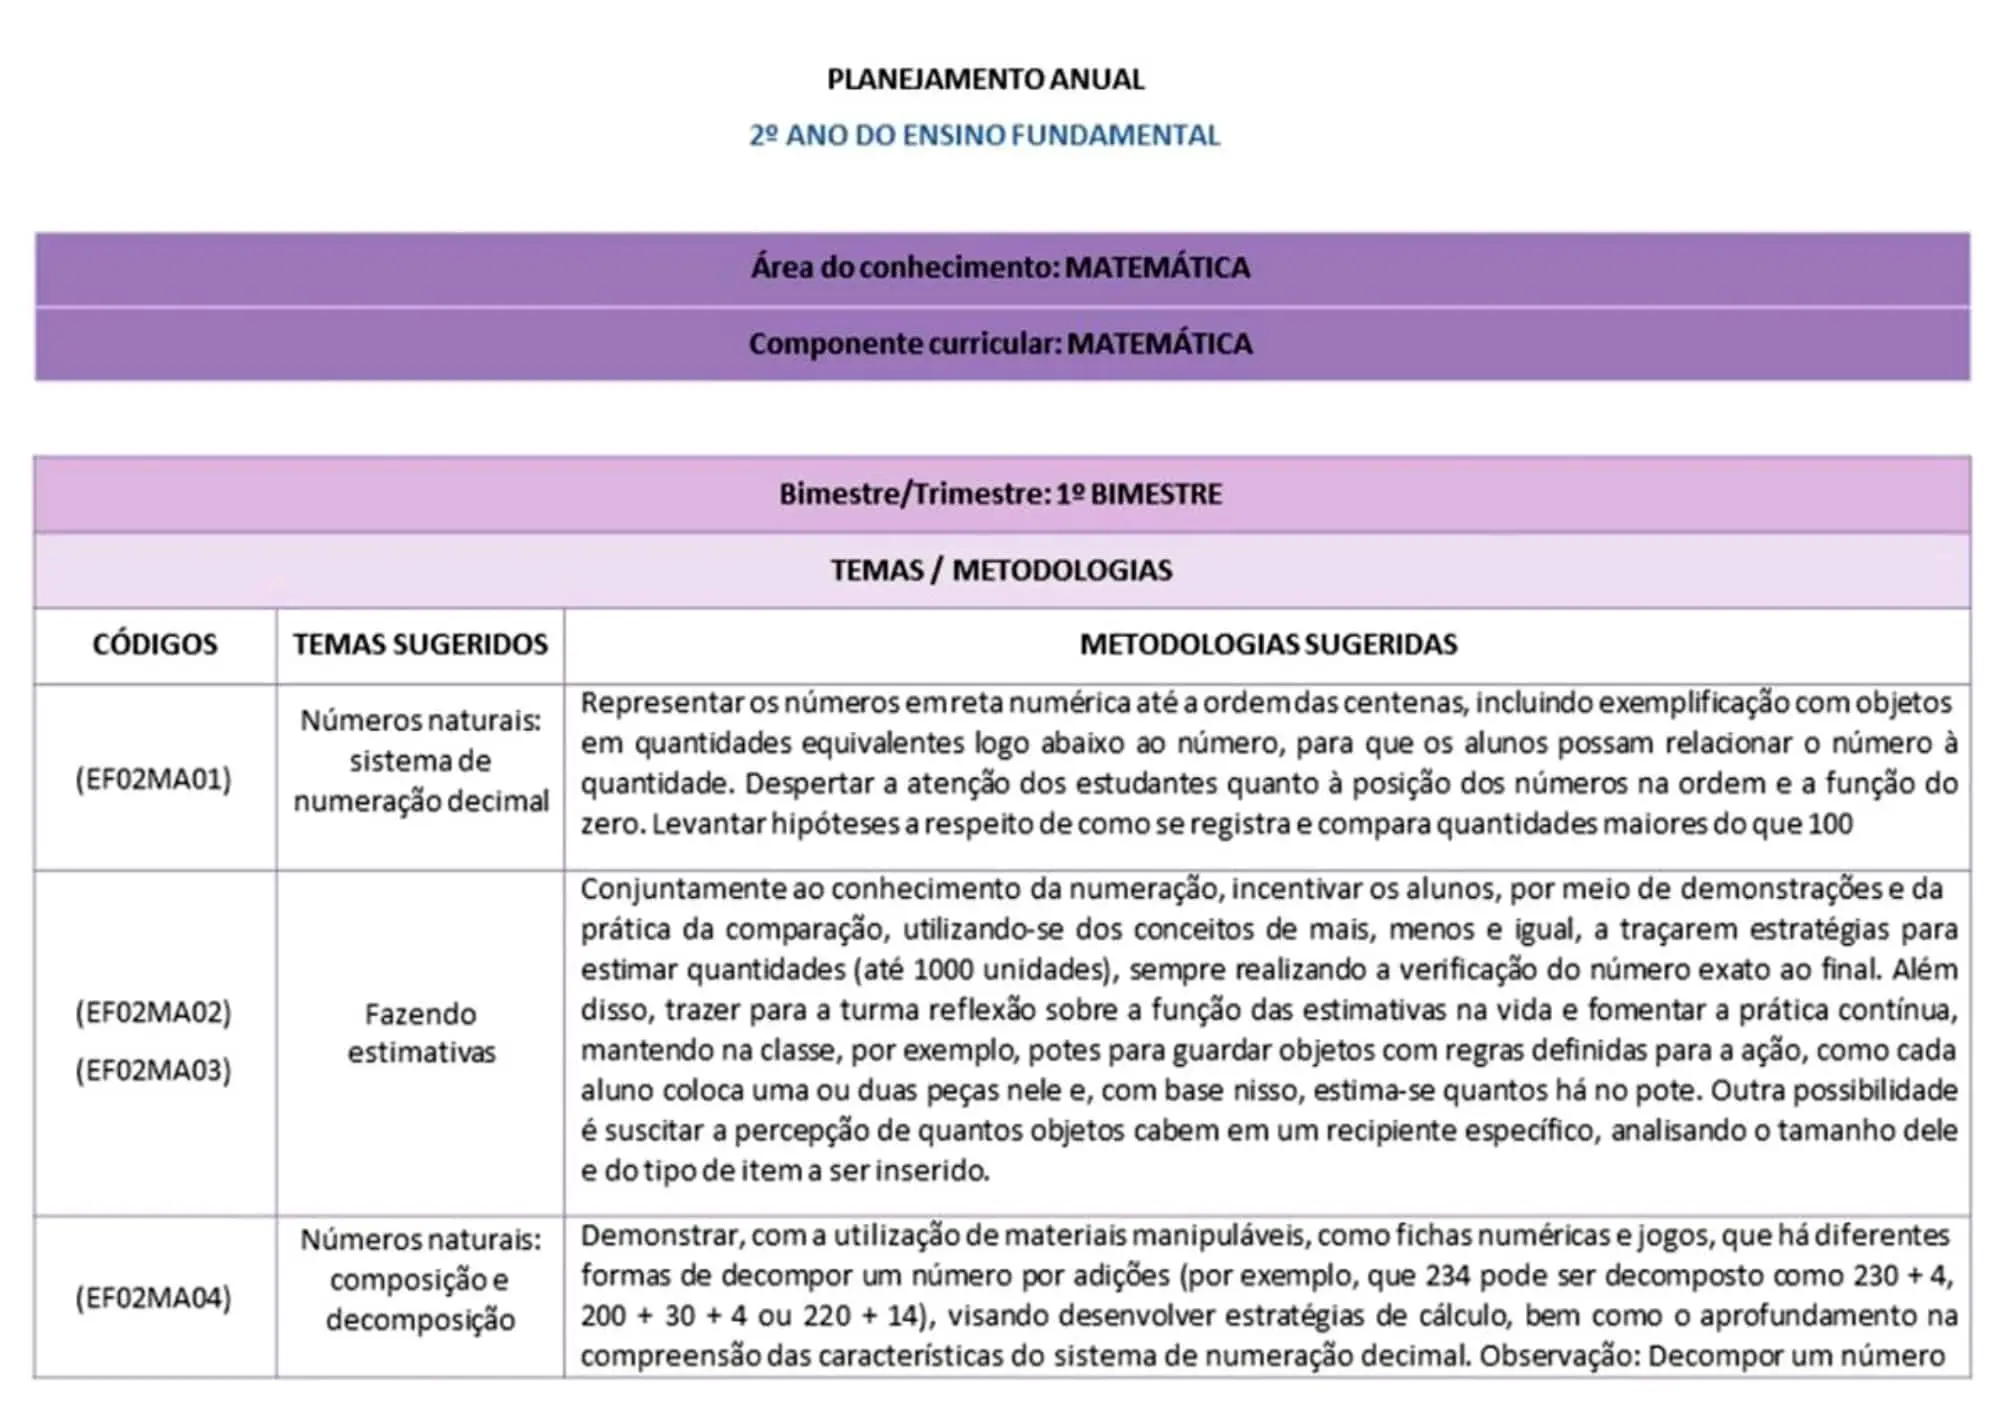 PLANEJAMENTOS DE AULAS ANUAL E MENSAL - 2023 (19)